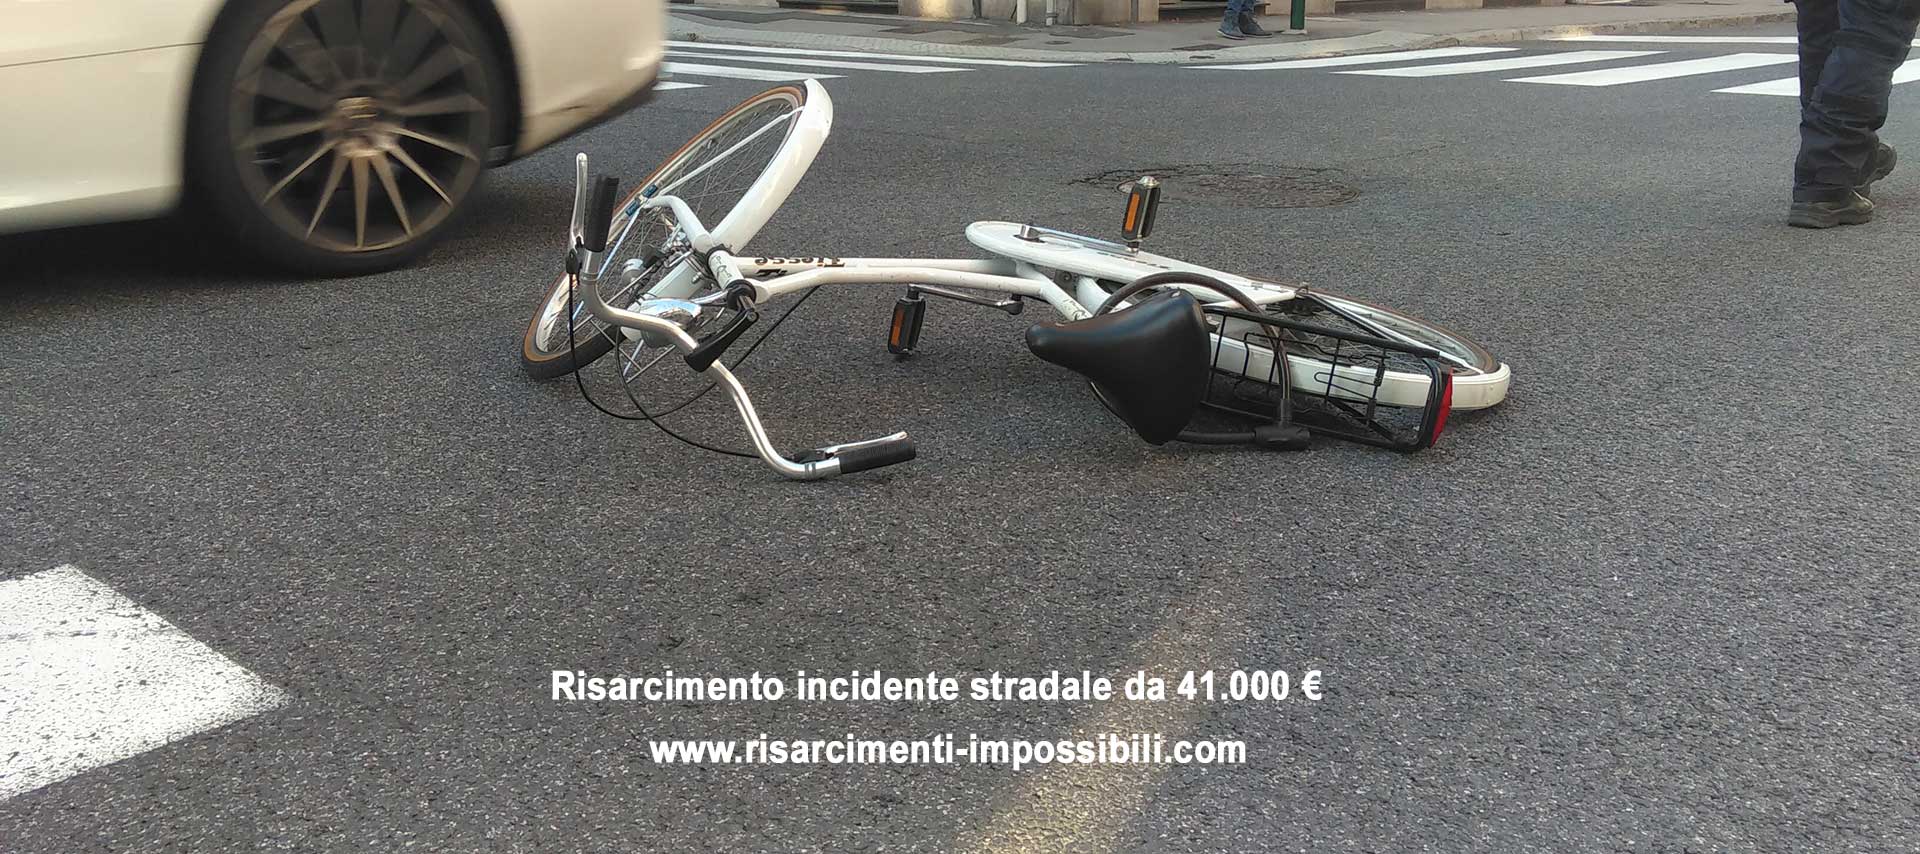 Risarcimento da 41.000 € per incindente Stradale in bicicletta causato dal manto stradale dissestato da buche e avvallamenti